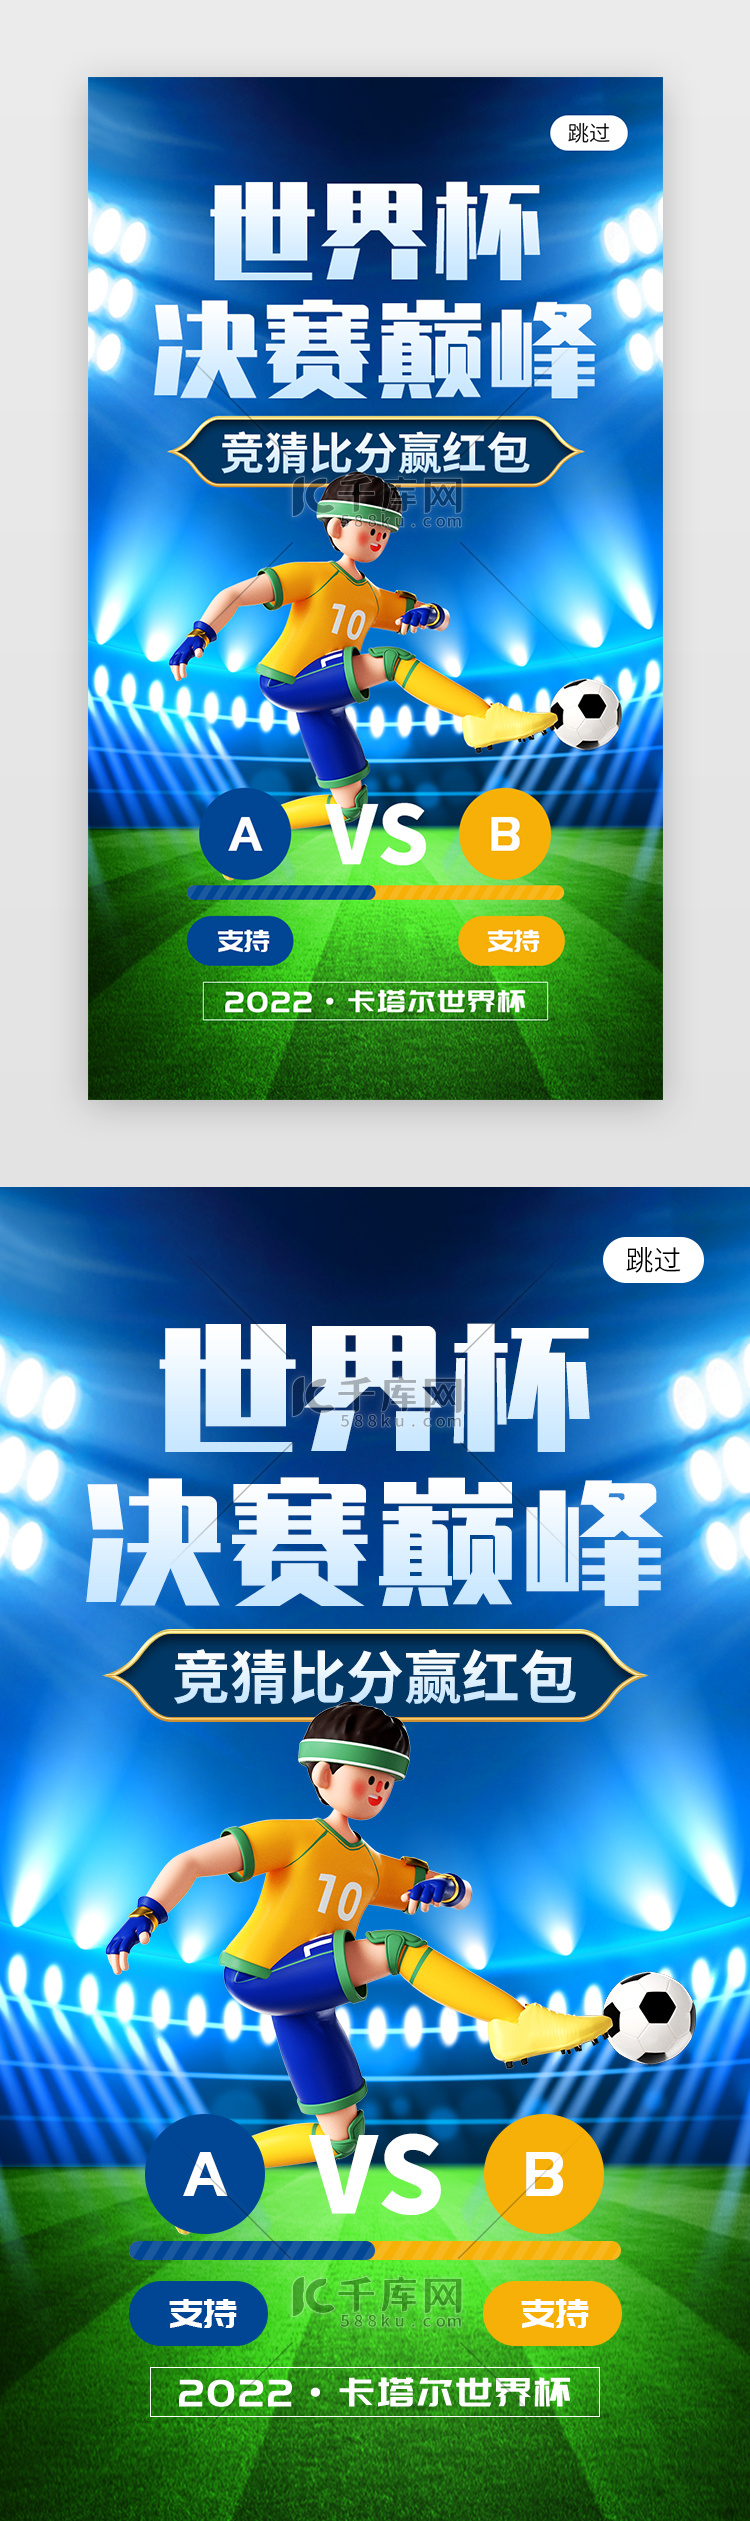 世界杯决赛巅峰app闪屏创意蓝色足球